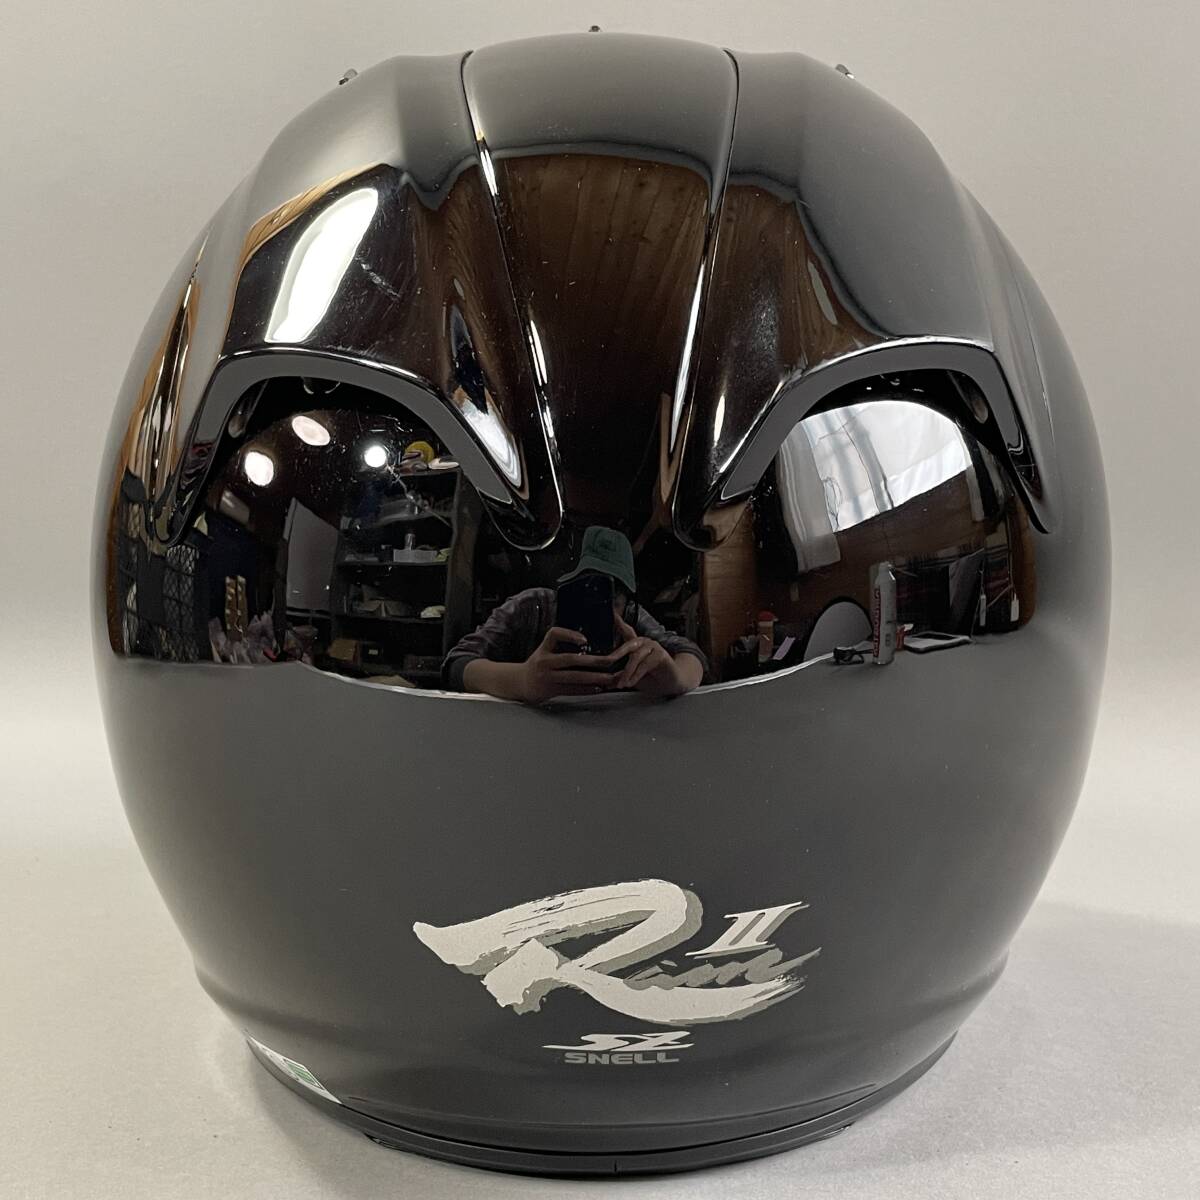 MS1129 Arai アライ SZ-Ram2 ジェットヘルメット 57-58cm Mサイズ ブラック 2001年製造 SNELL M2000規格 箱あり (検)バイク シールド 黒の画像4